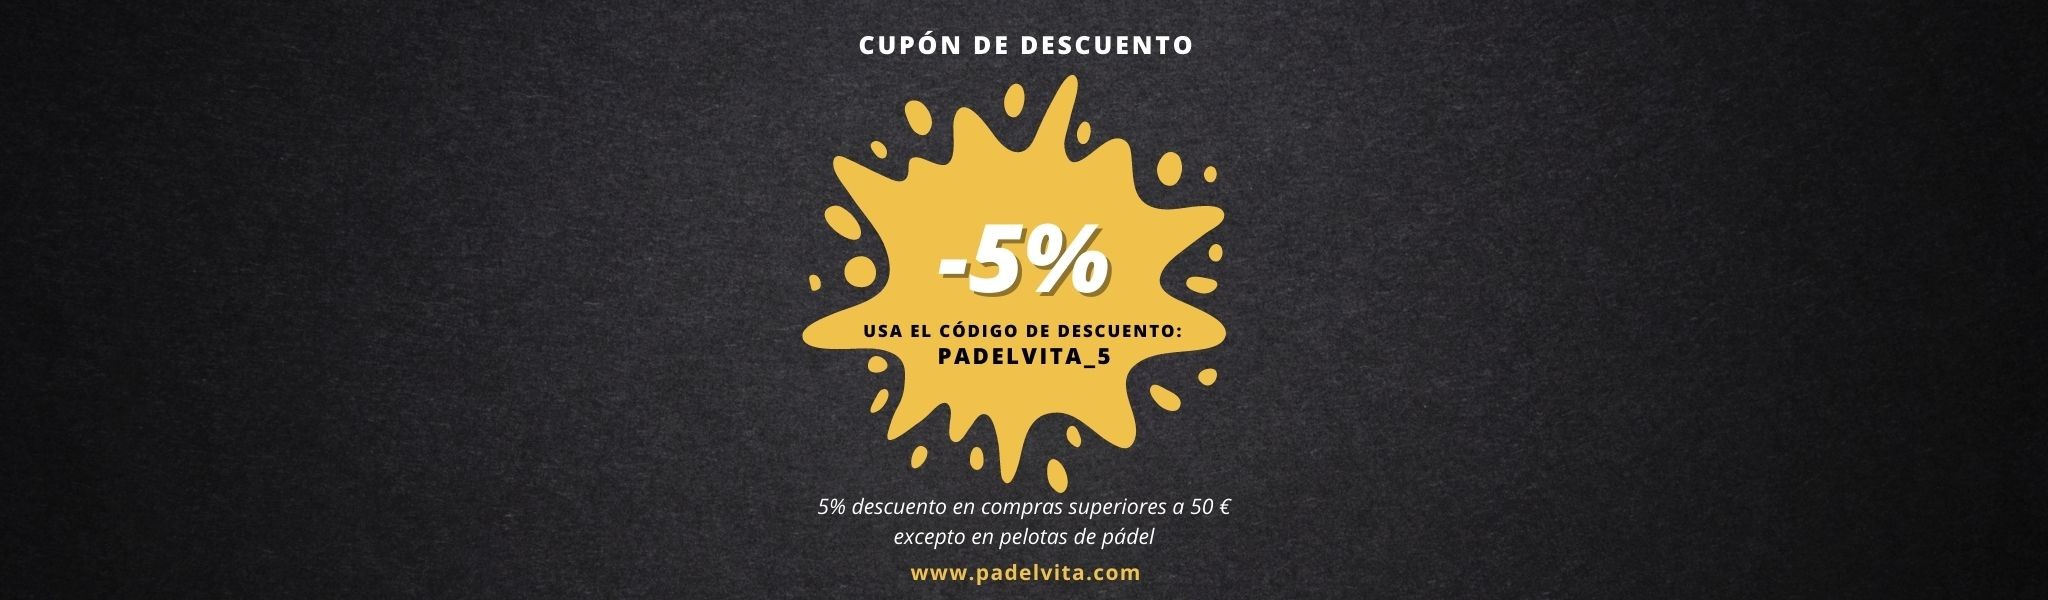 5% de descuento - Padelvita